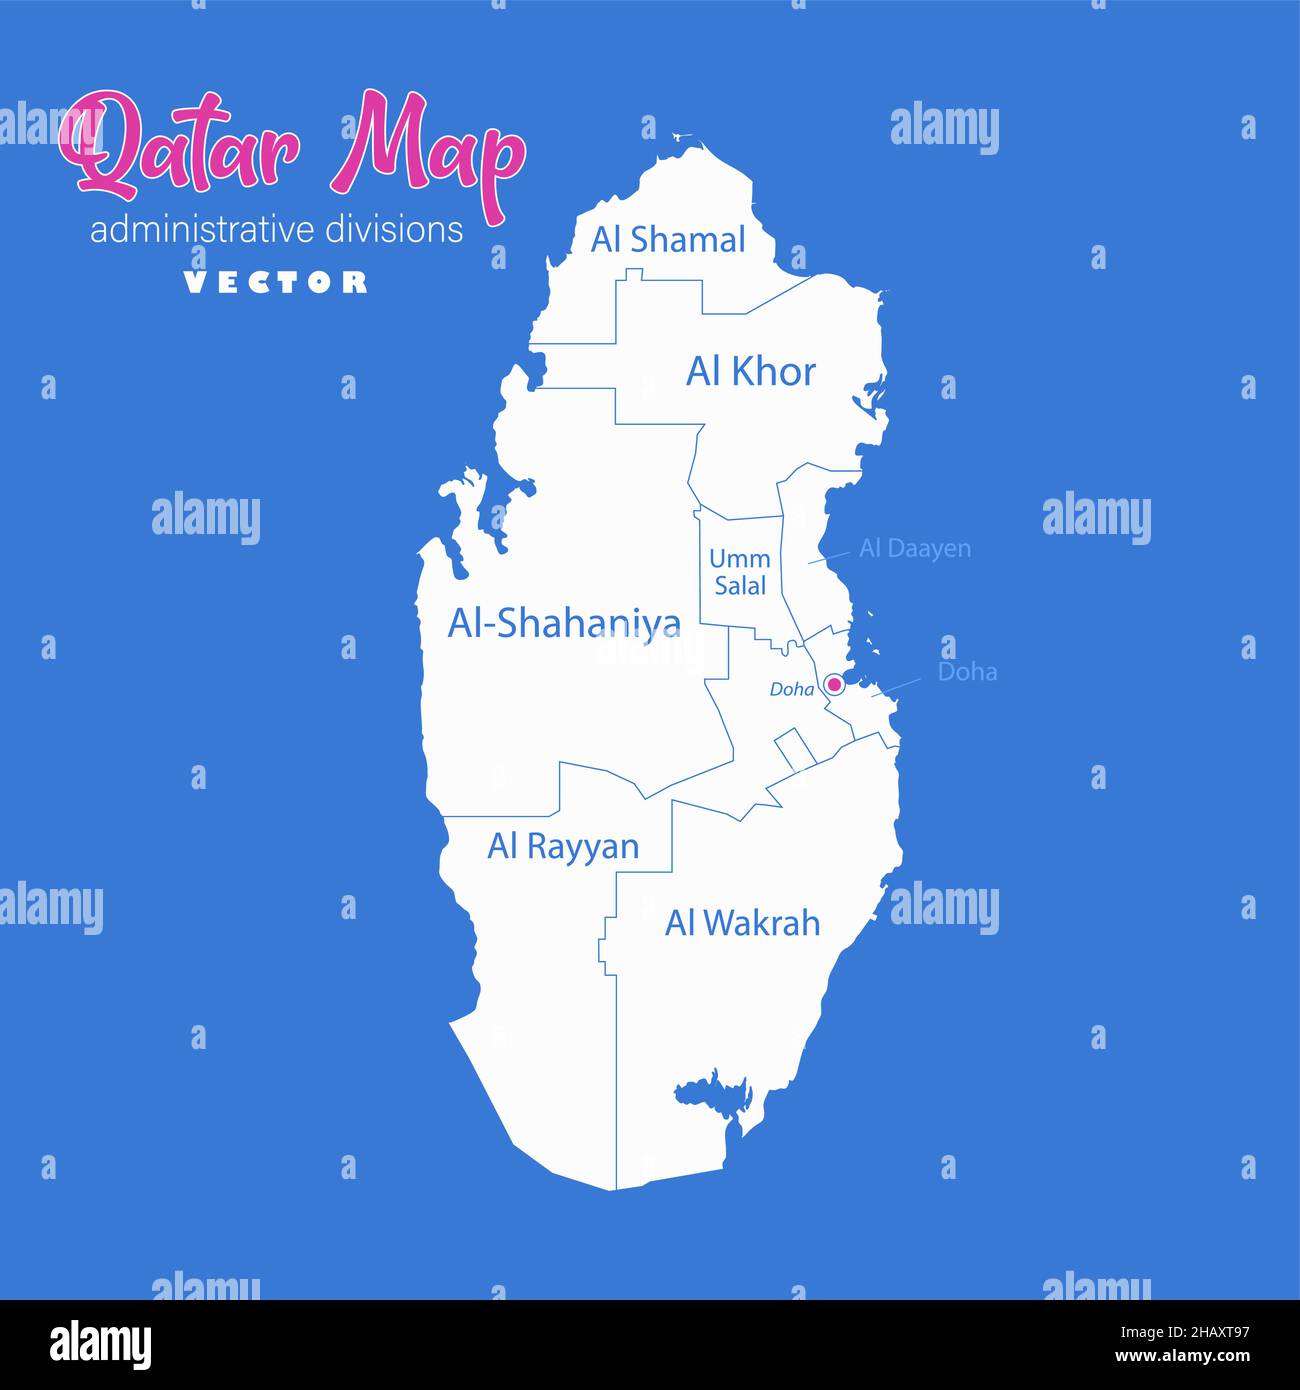 Mappa del Qatar, divisioni amministrative con nomi di regioni, vettore di sfondo blu Illustrazione Vettoriale